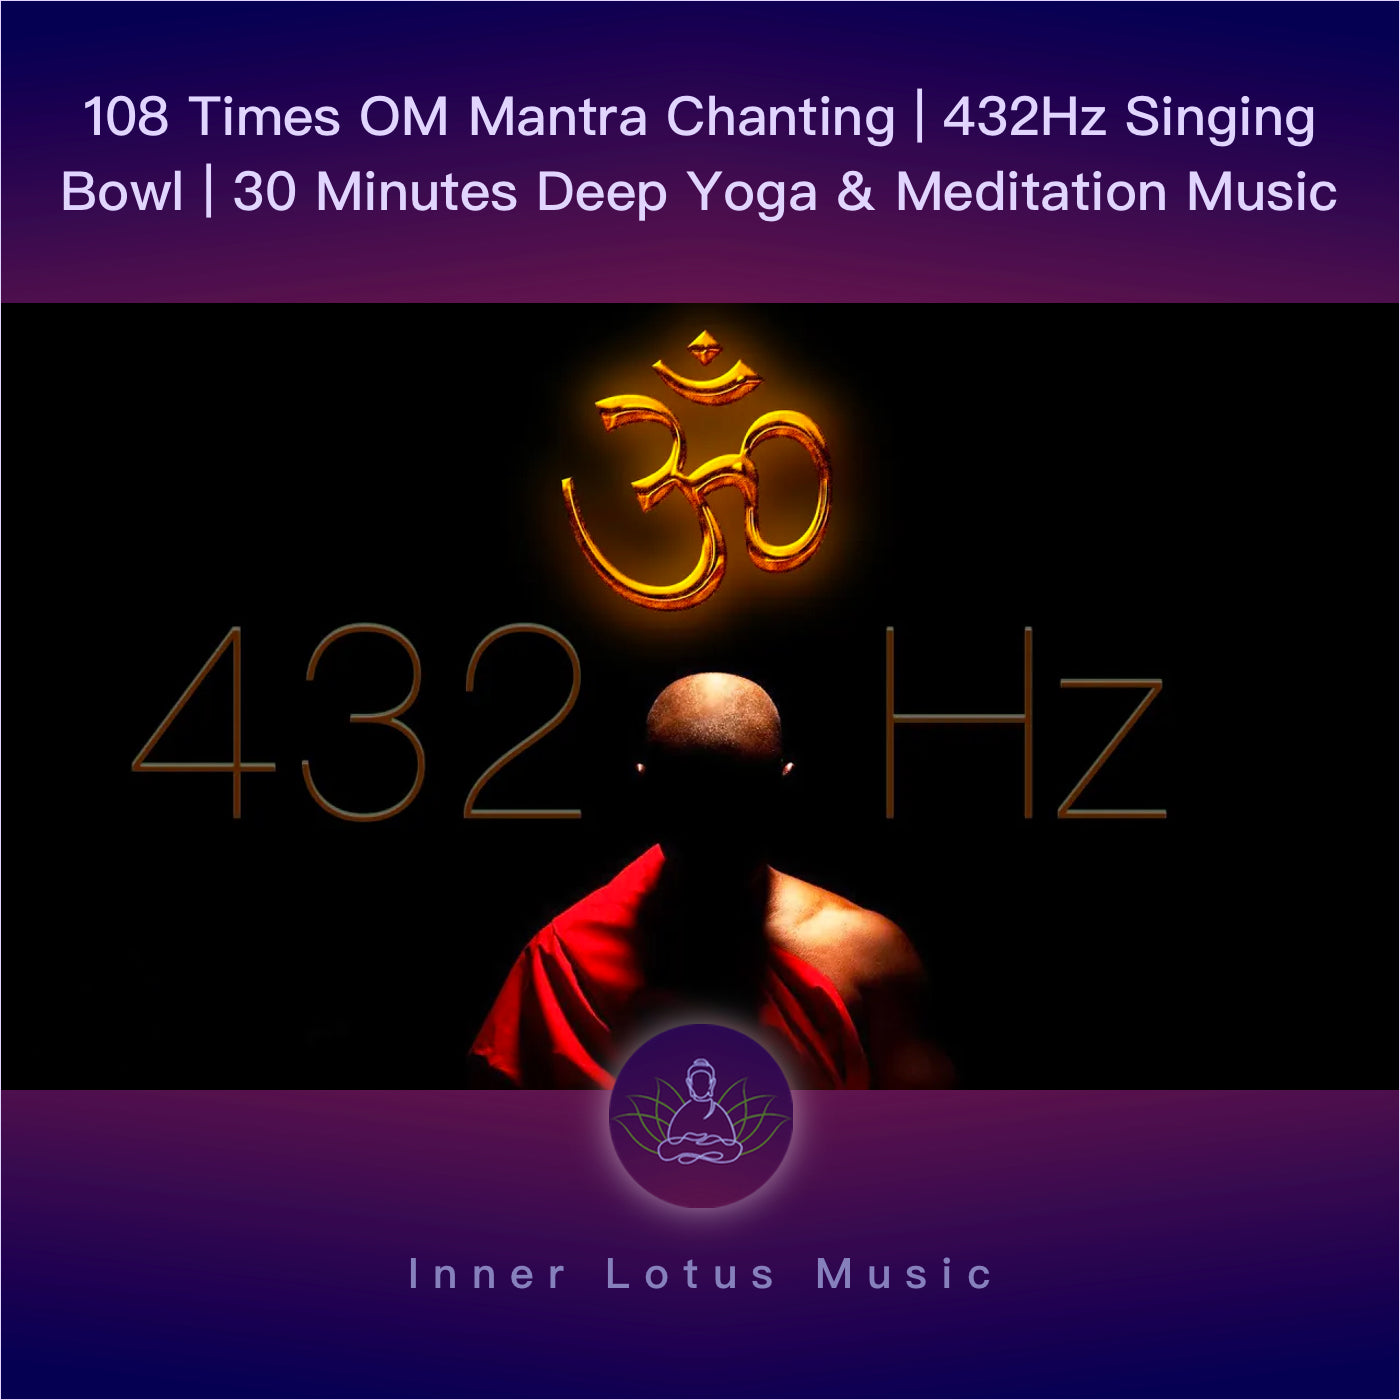 Mantra OM chanté 108 fois | Musique 432Hz et Bol de Cristal Chantant | 30 Minutes Yoga & Méditation